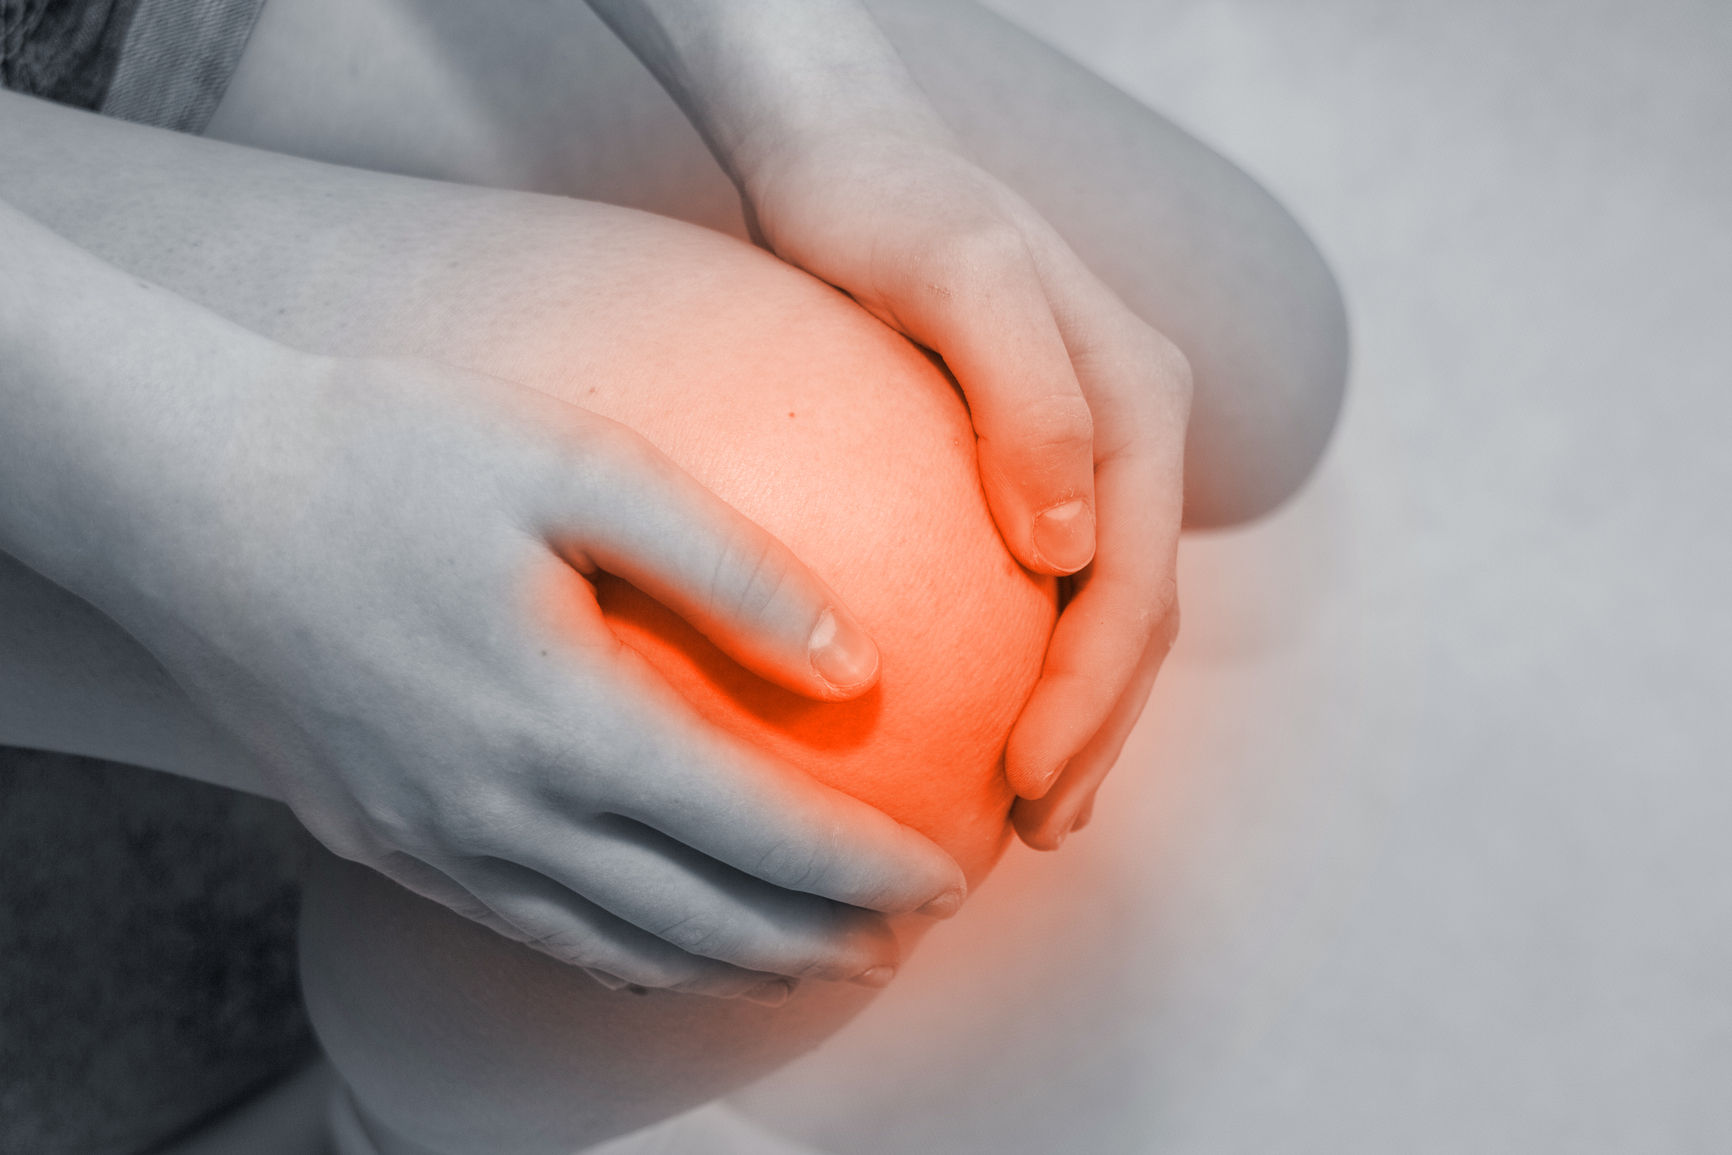 Резкая боль при разгибании коленного сустава к какому врачу обратиться